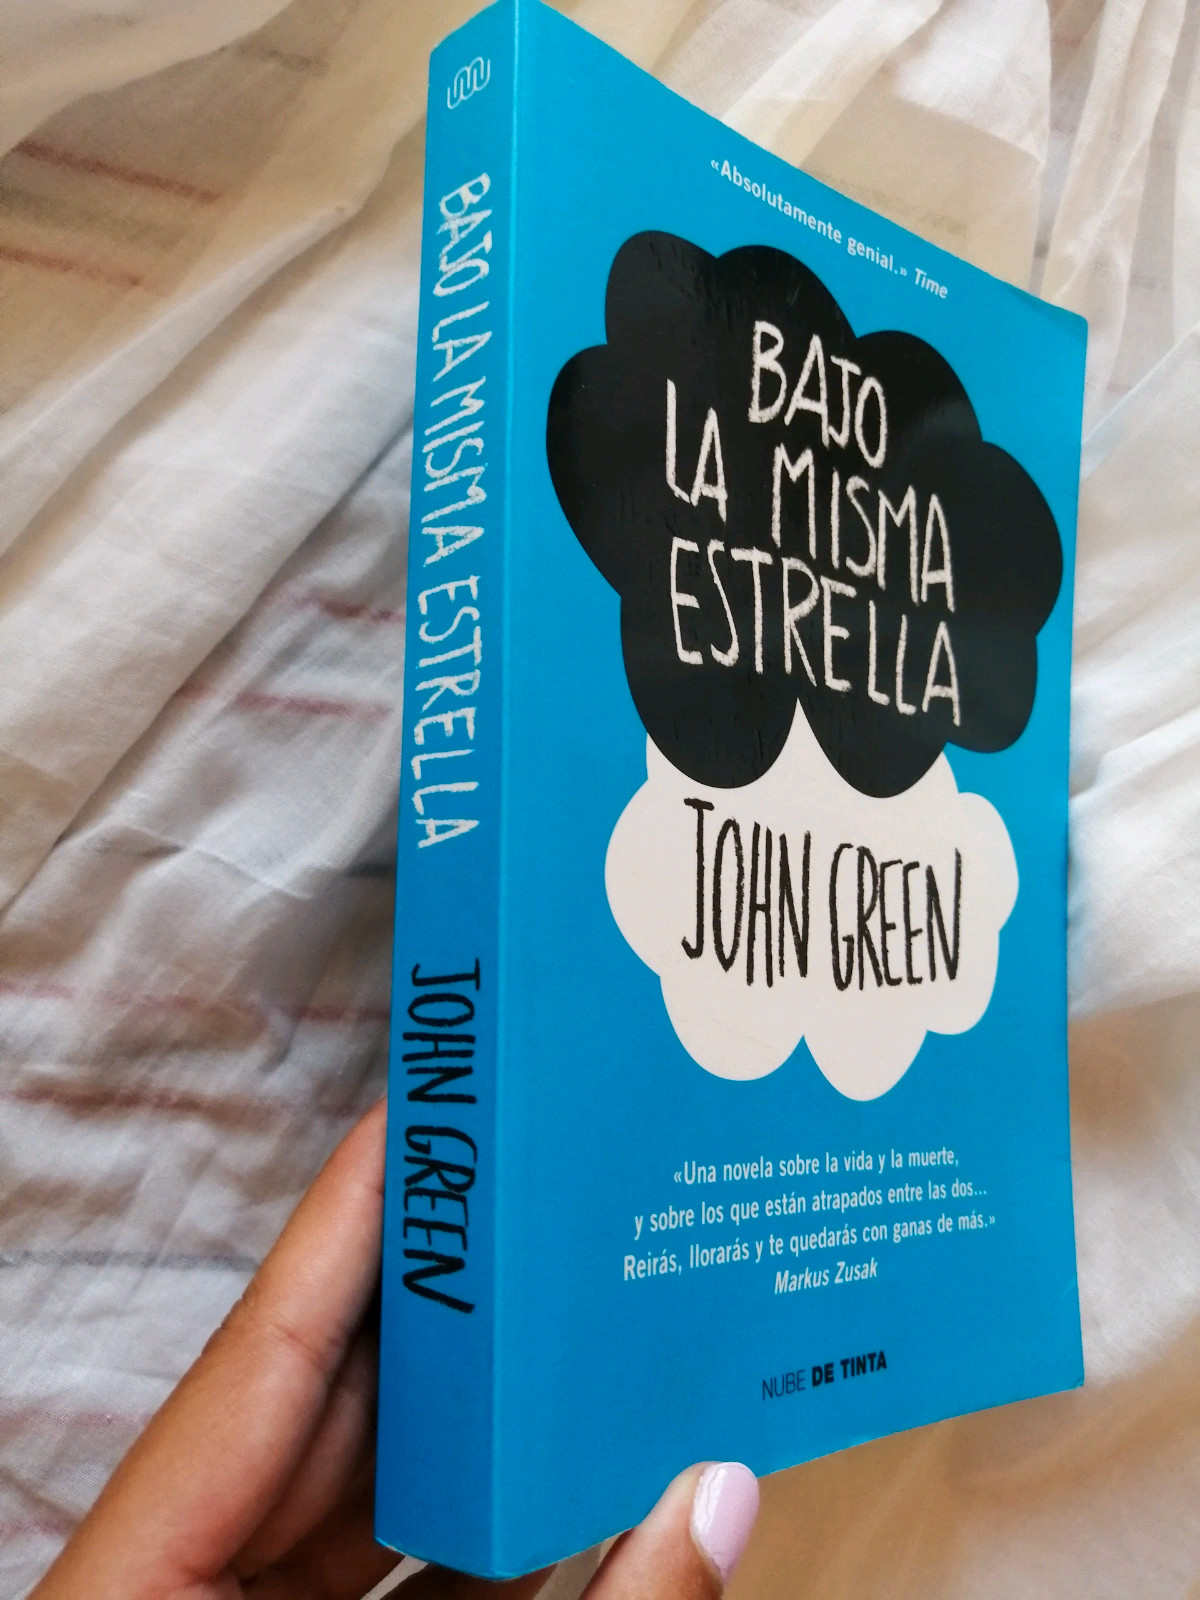 La novela «Bajo la misma estrella», el libro más vendido en España en el  2014